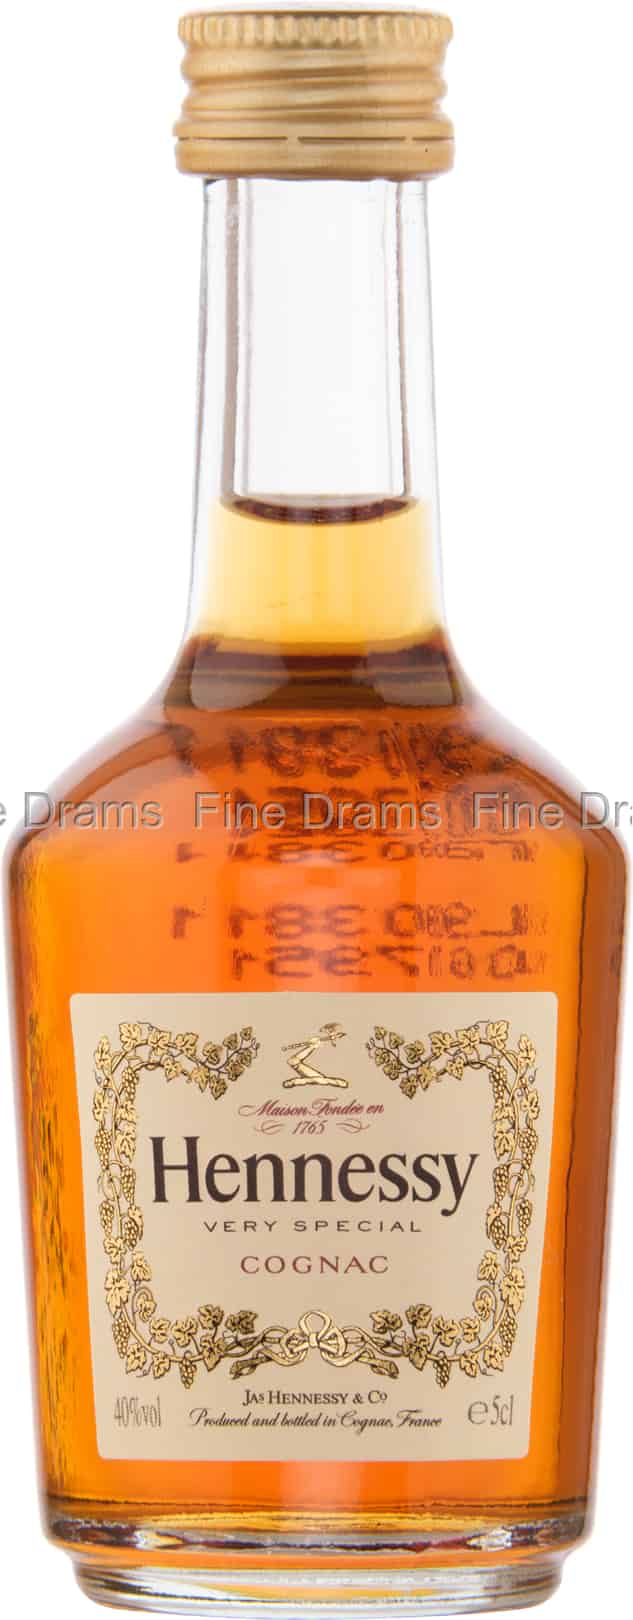 2本セット新品未開封 Hennessy cognac ブランデー - www 